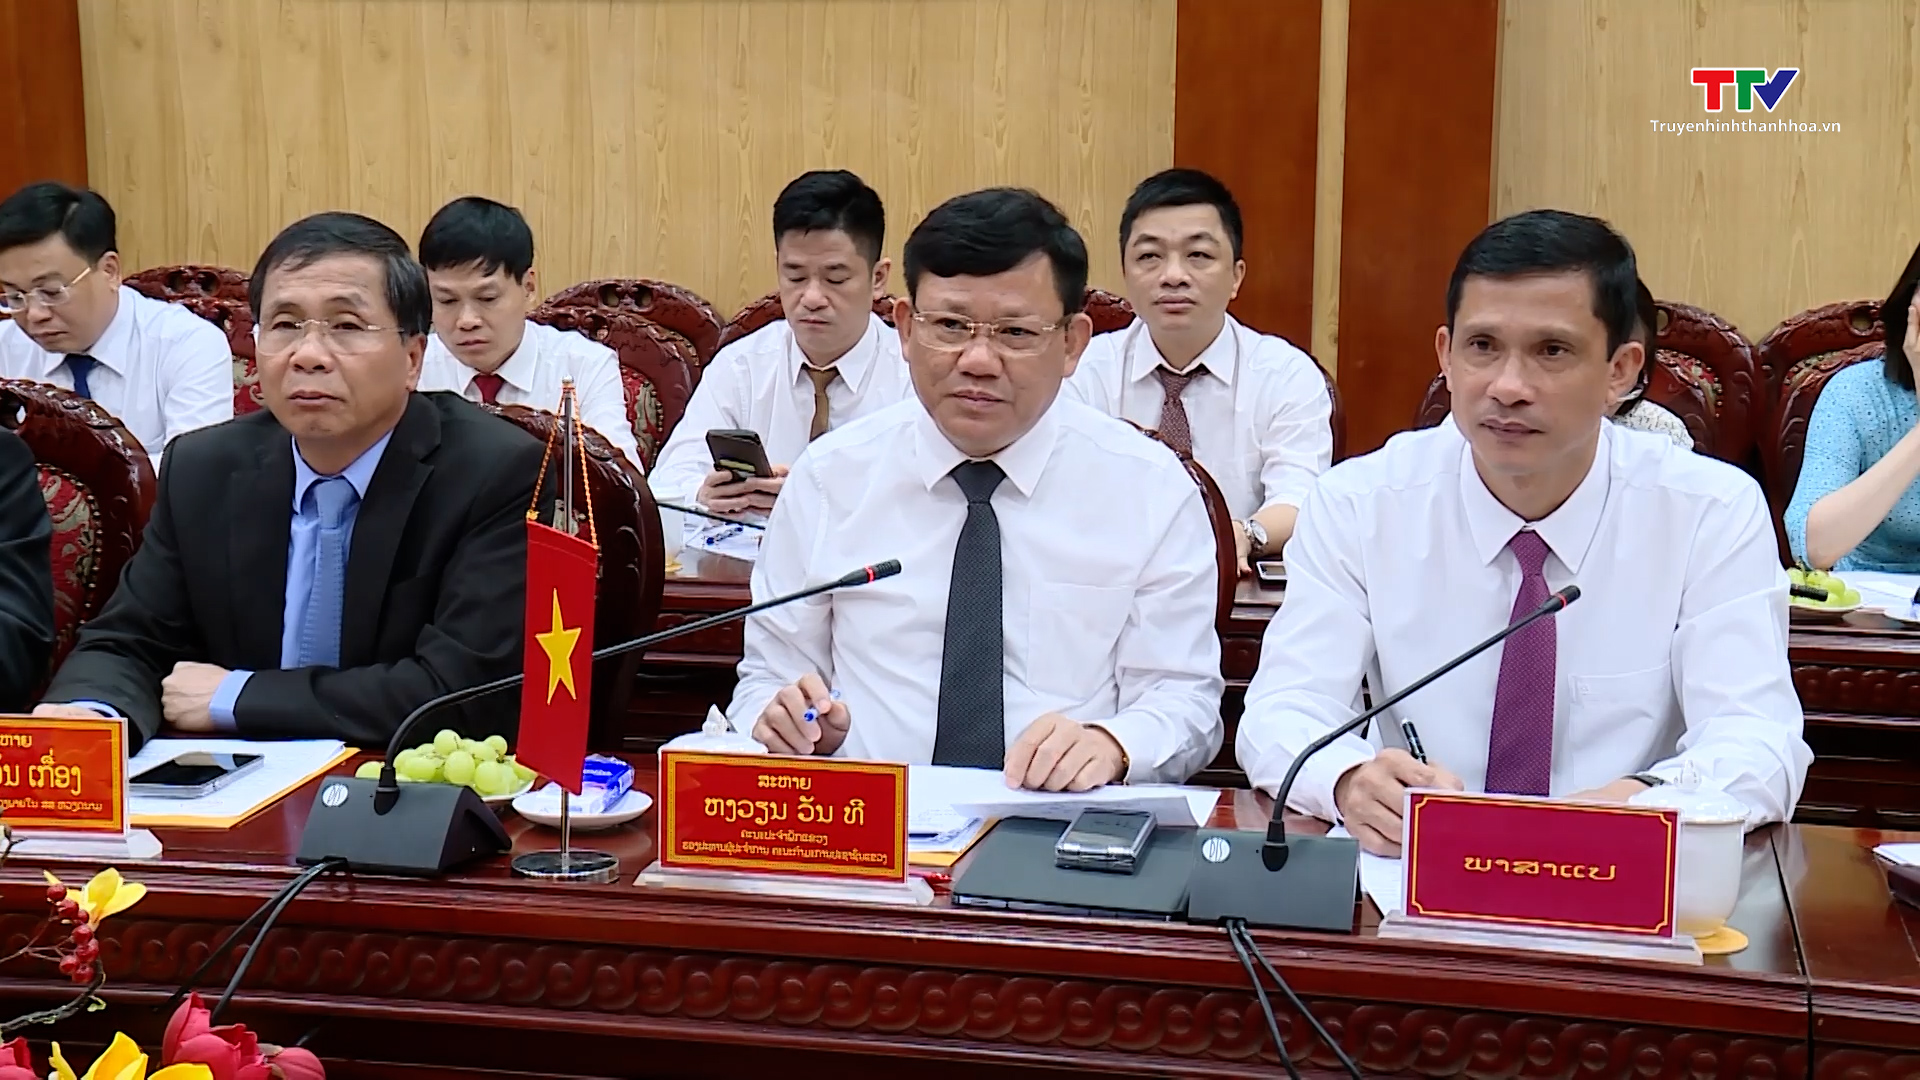 Đoàn cán bộ cấp cao của nước Cộng hoà dân chủ Nhân dân Lào thăm và làm việc tại tỉnh Thanh Hoá - Ảnh 2.